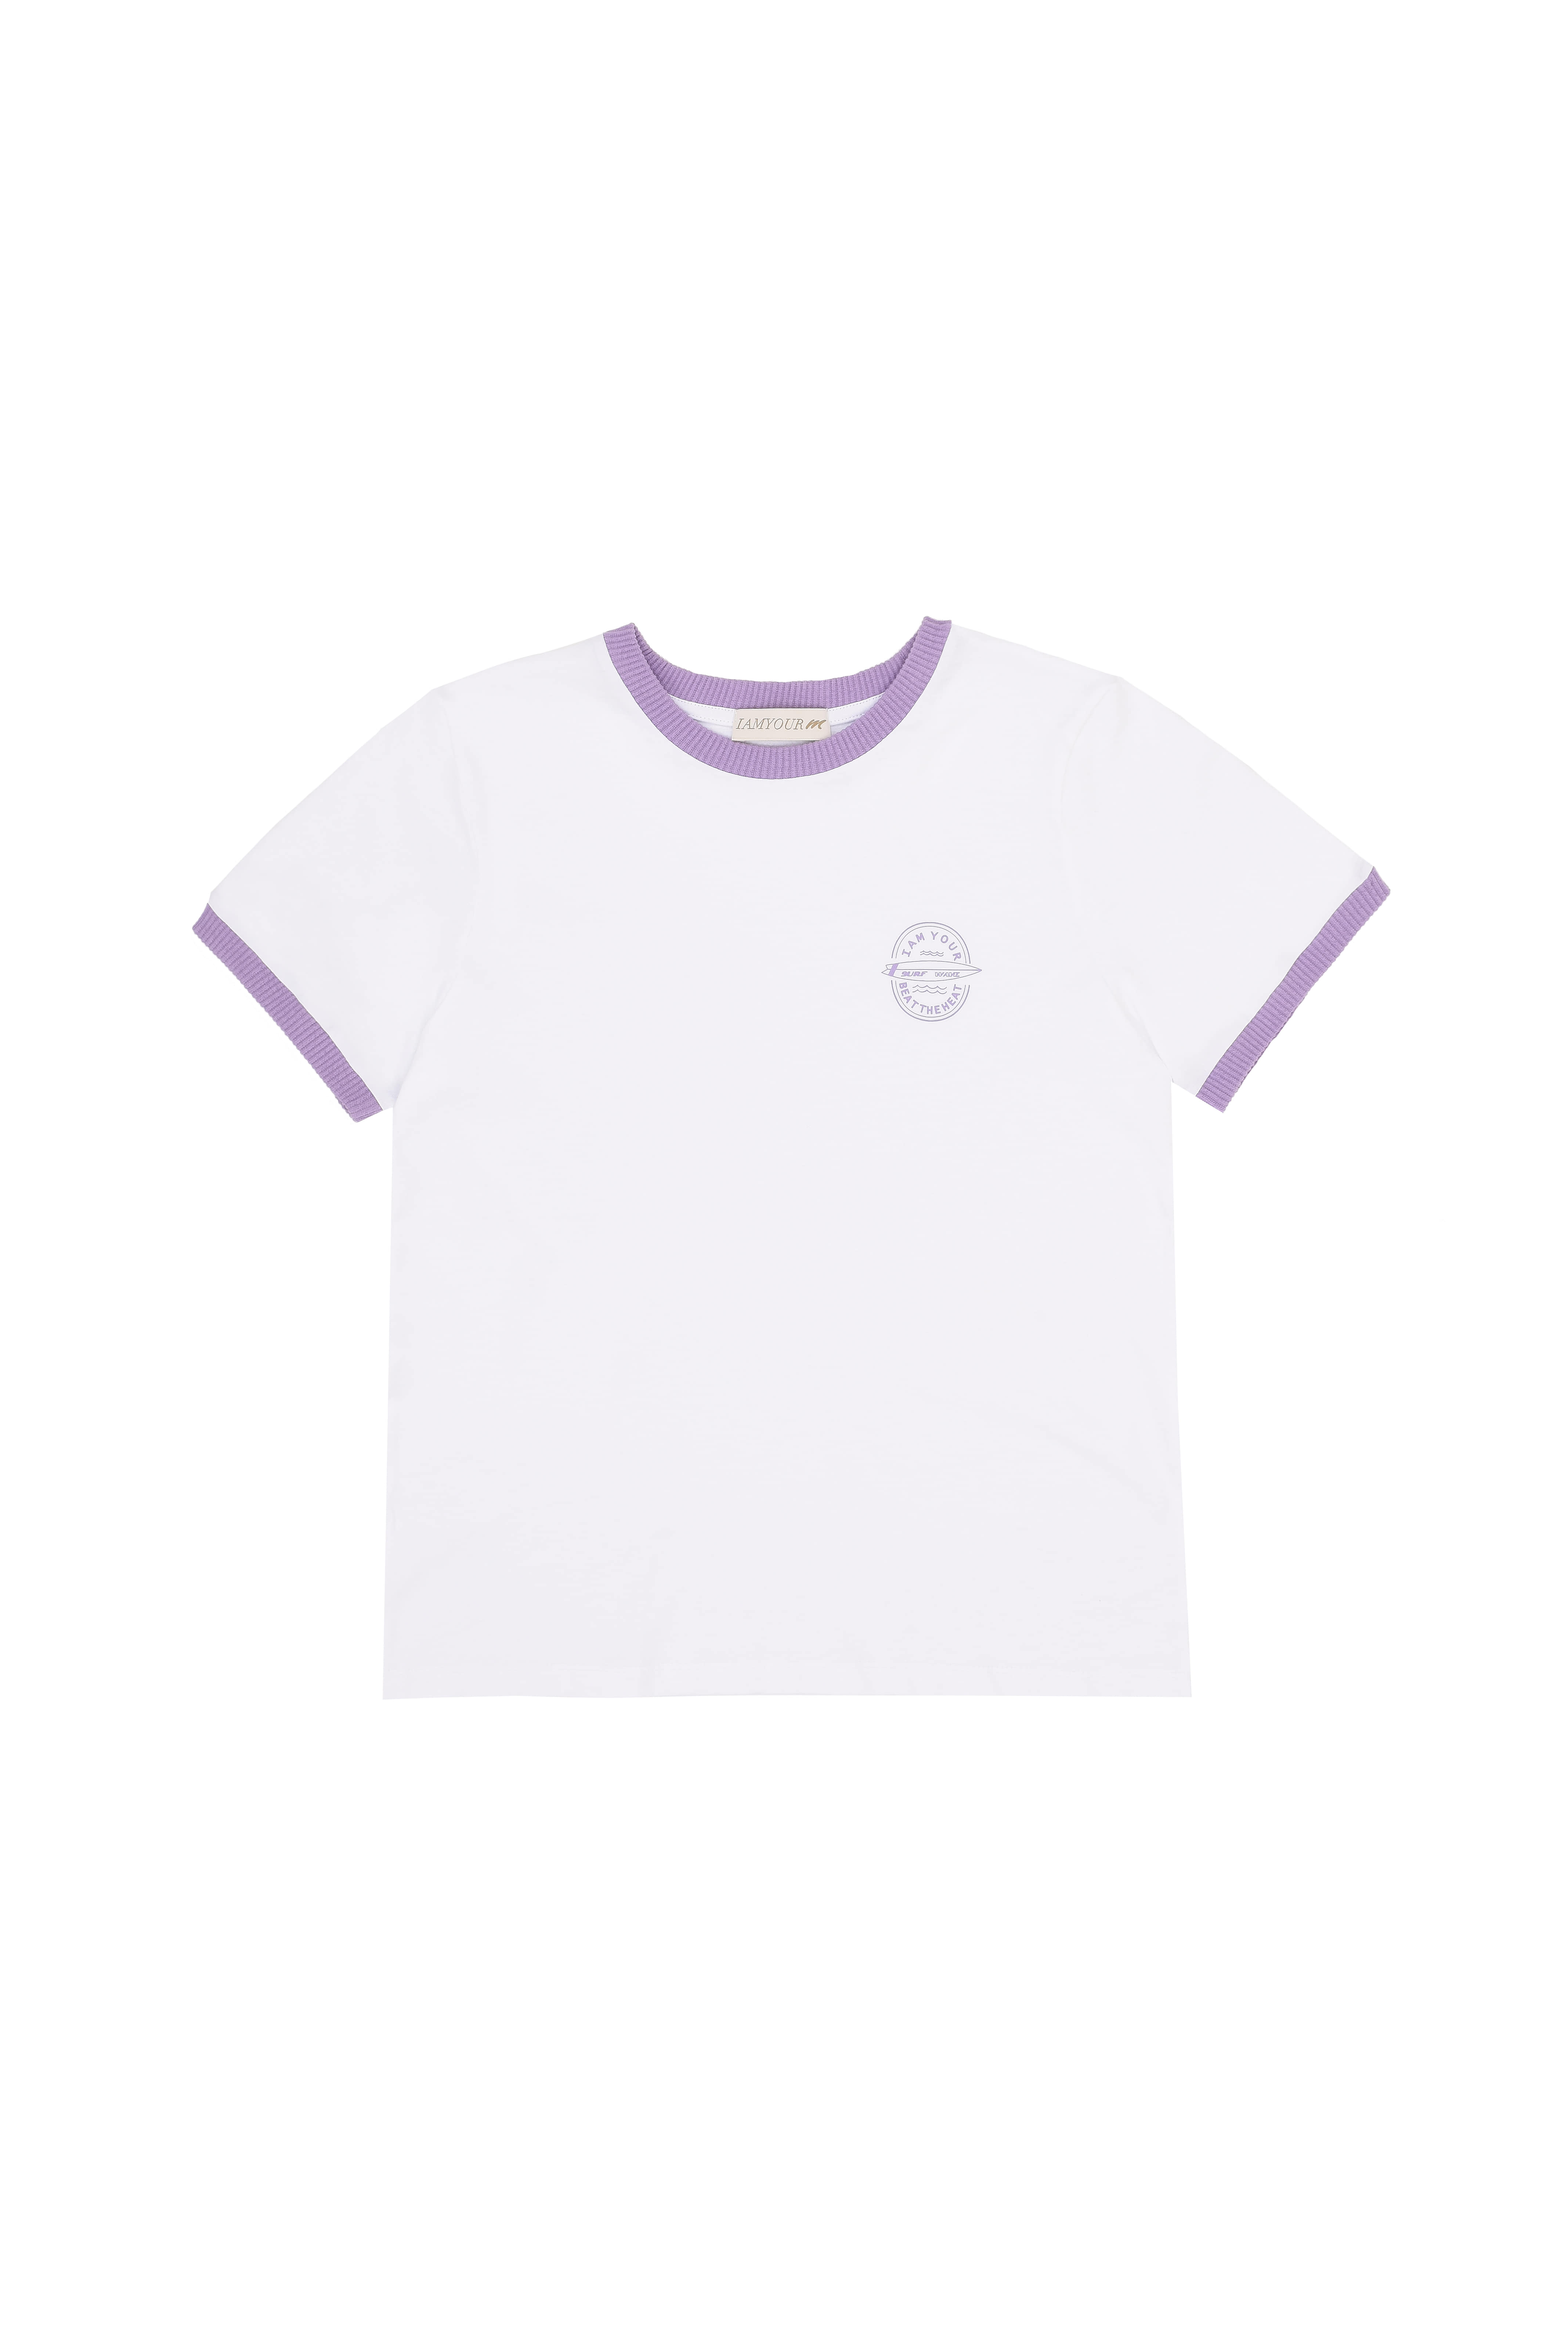 50%--Surf wave T-shirt (purple)